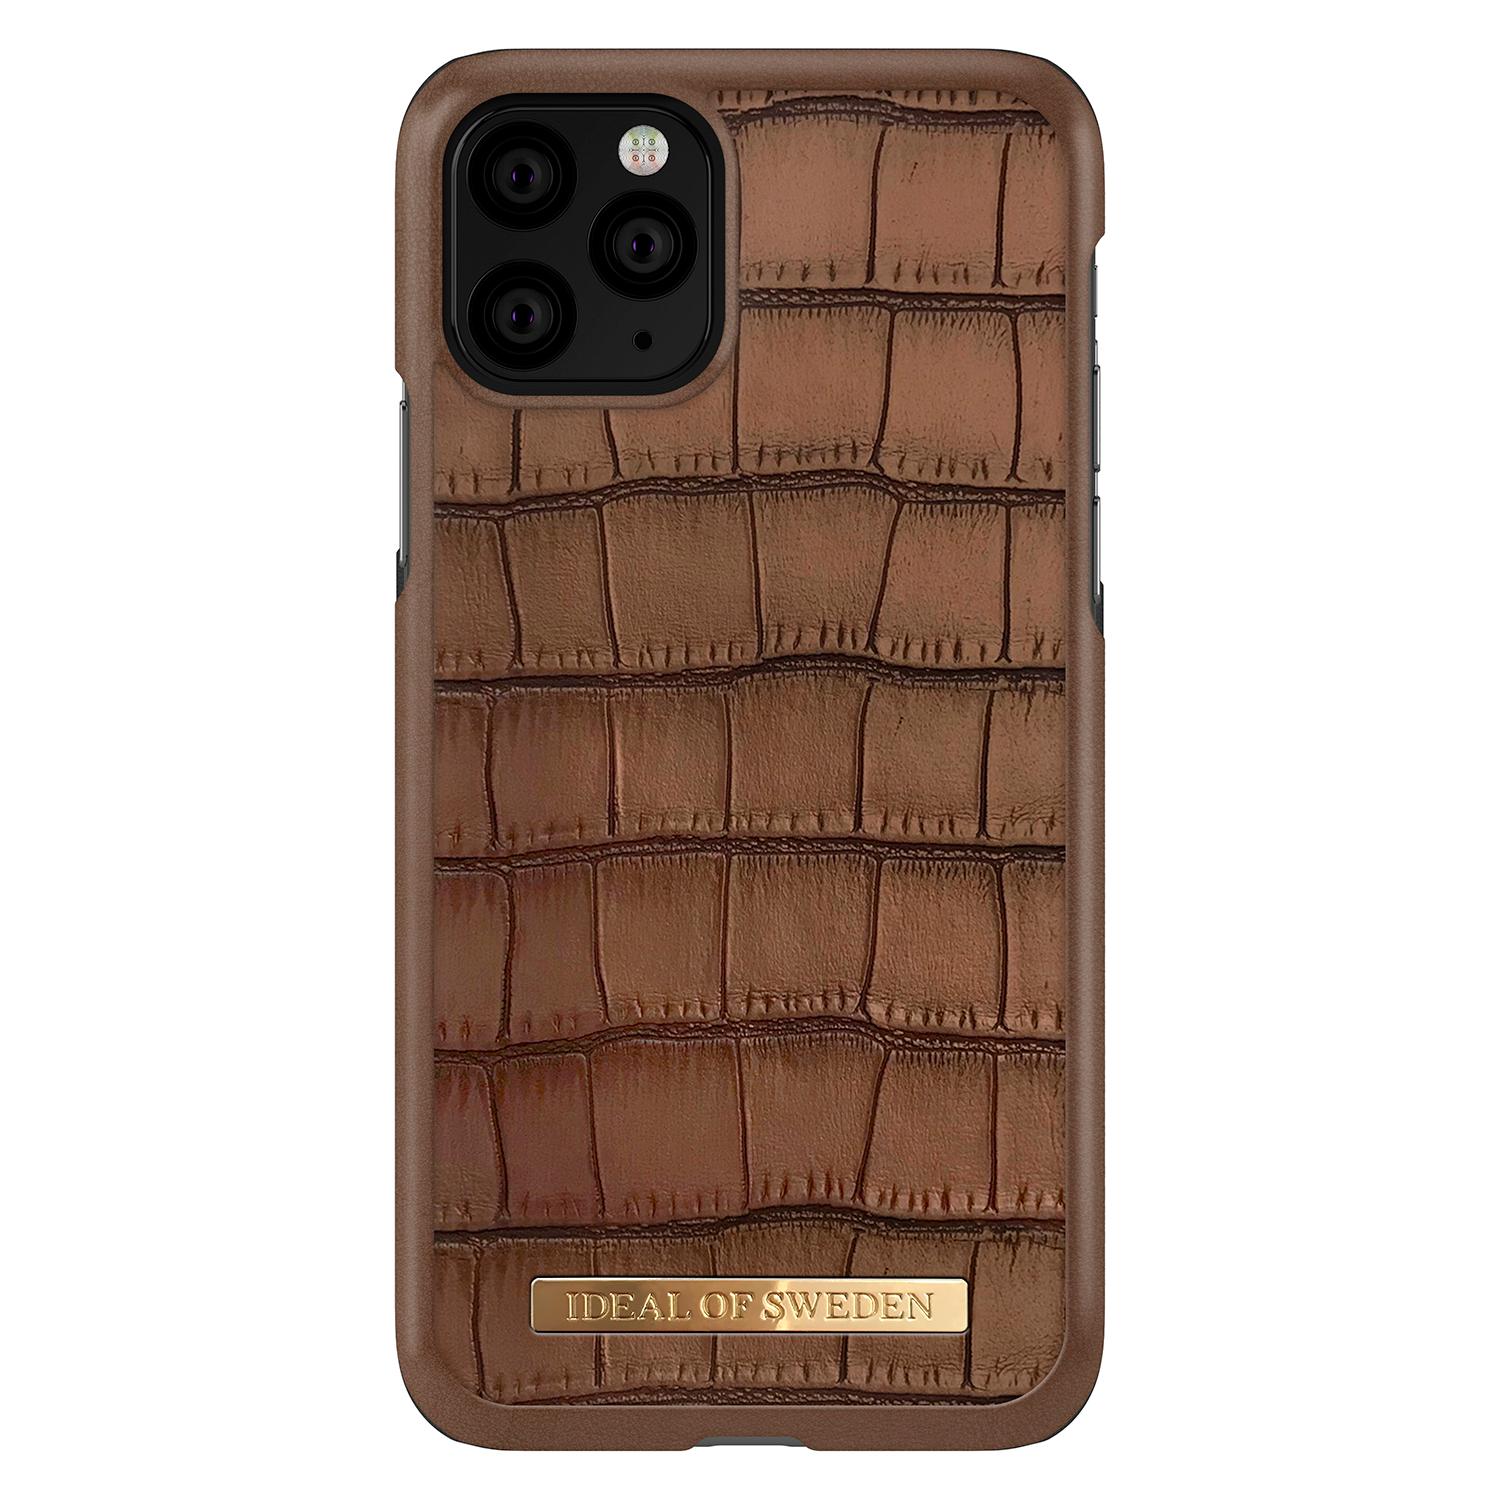 Capri Case iPhone 11 Pro Brown